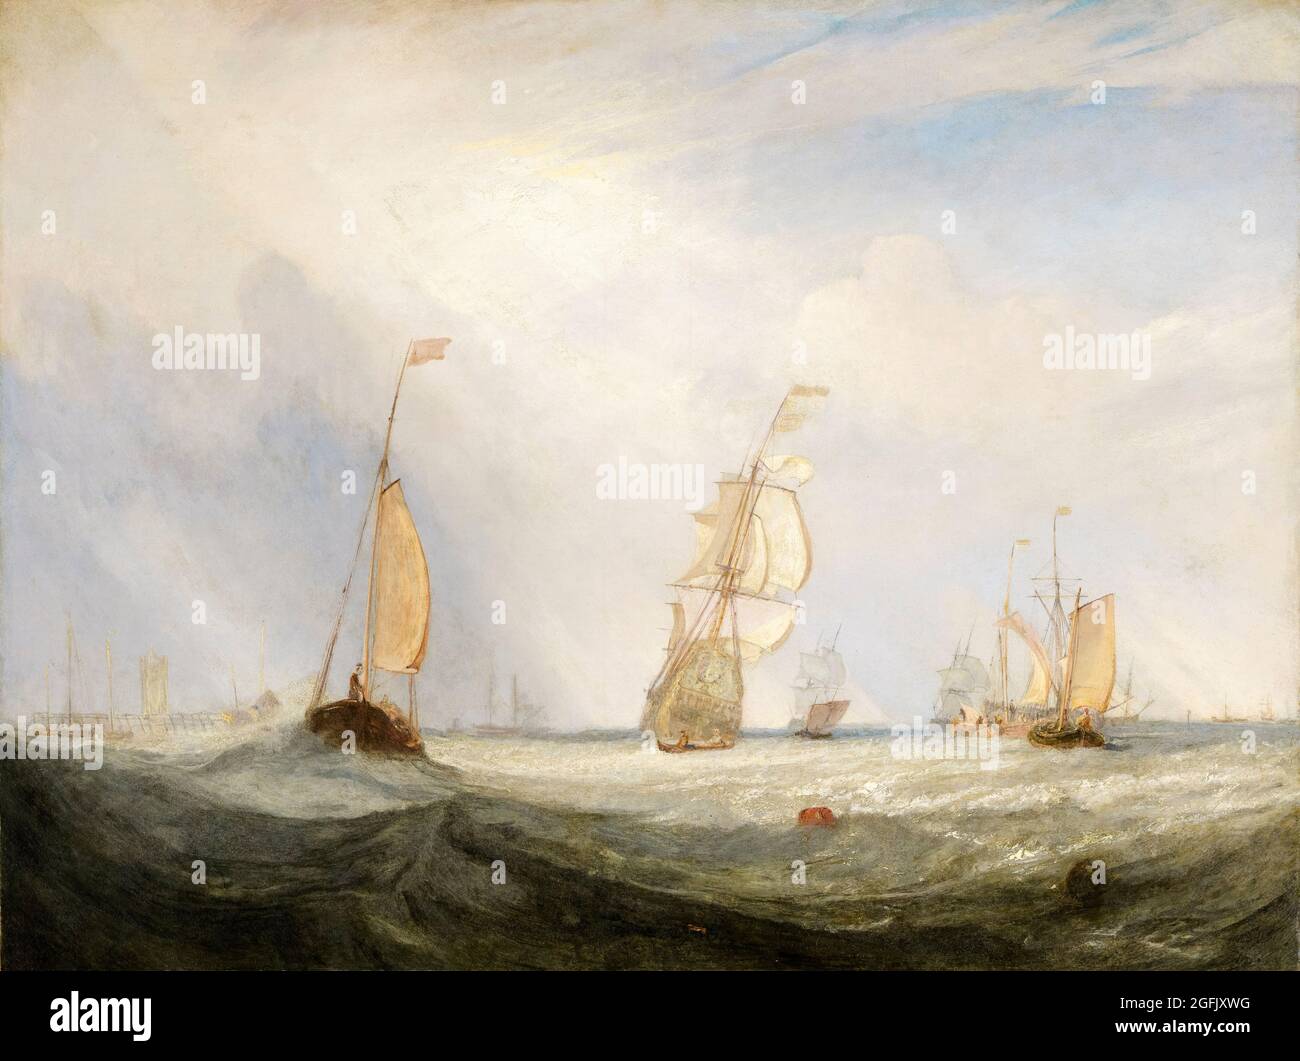 JMW Turner, Helvoetsluys: La ciudad de Utrecht, 64, ir al mar, pintura, 1832 Foto de stock